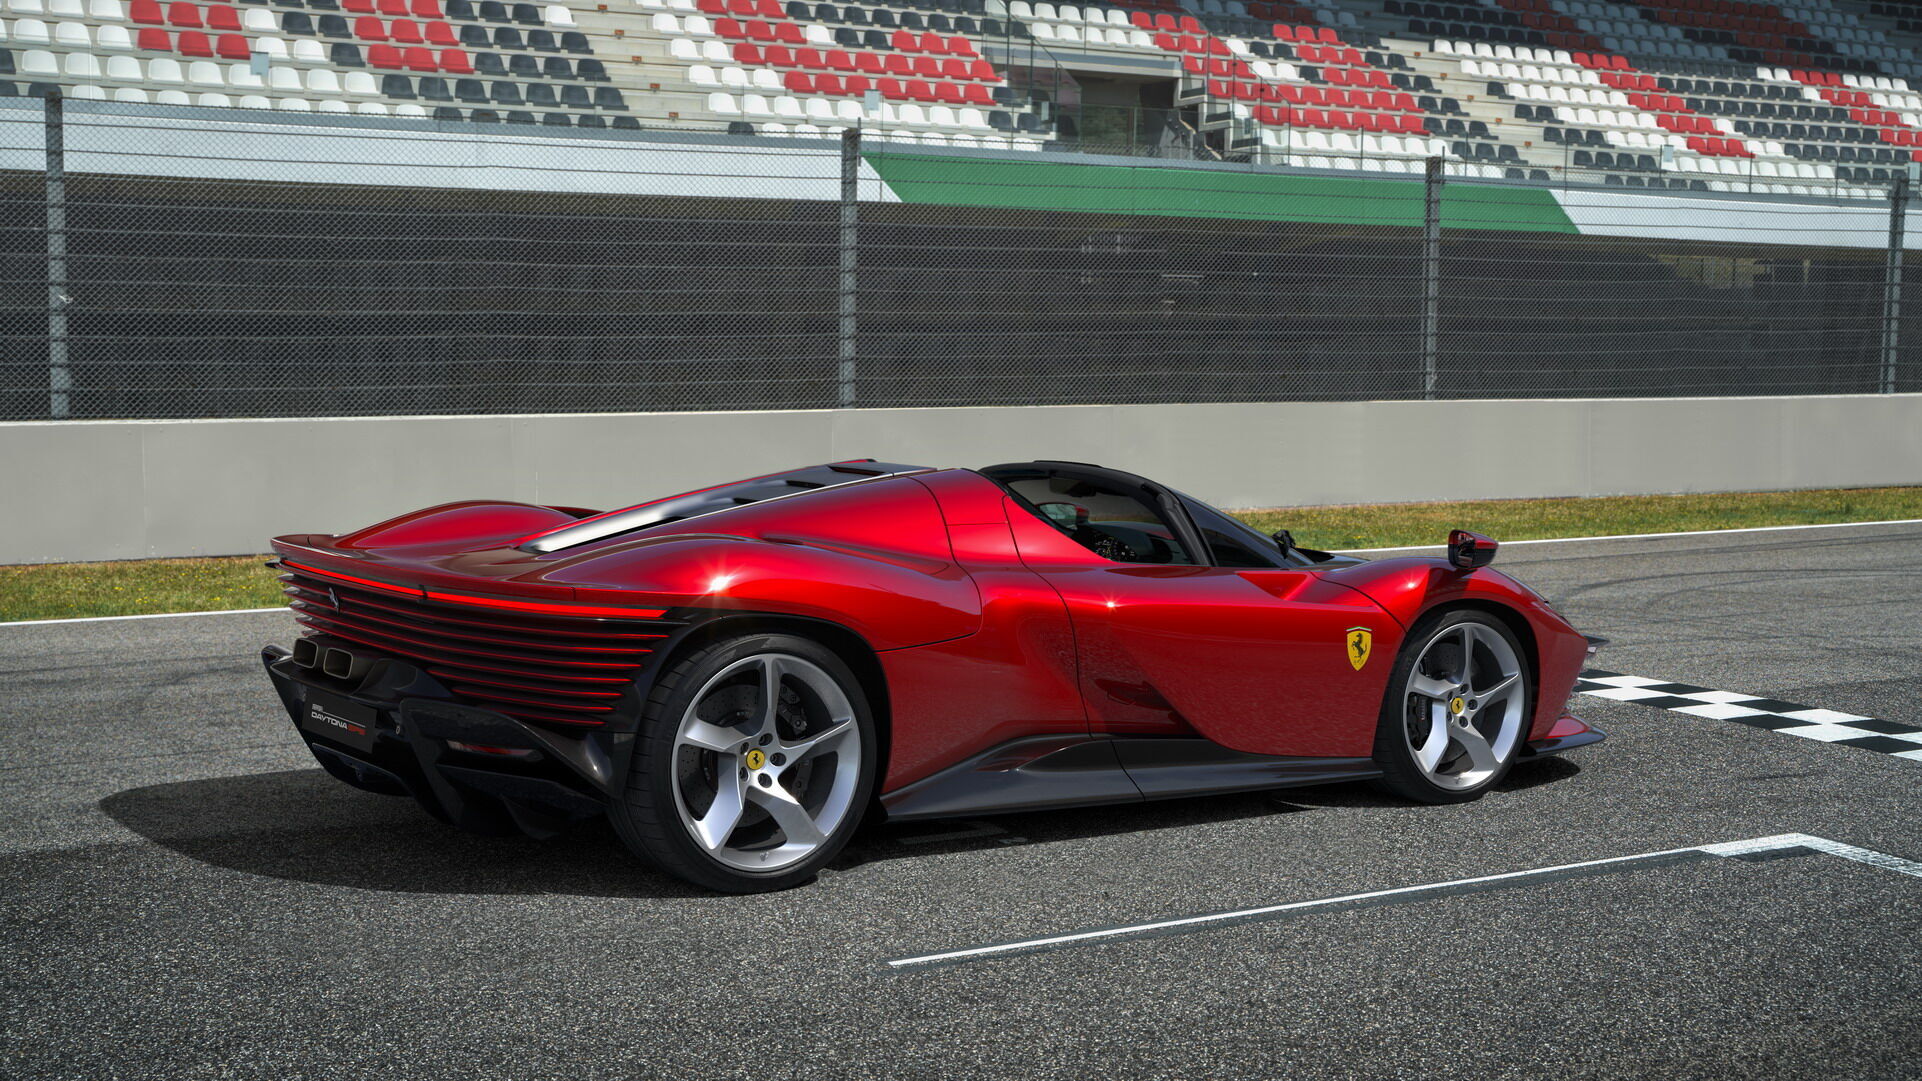 Вдохновение при создании новинки дизайнеры Ferrari черпали в образах легендарных гоночных моделей